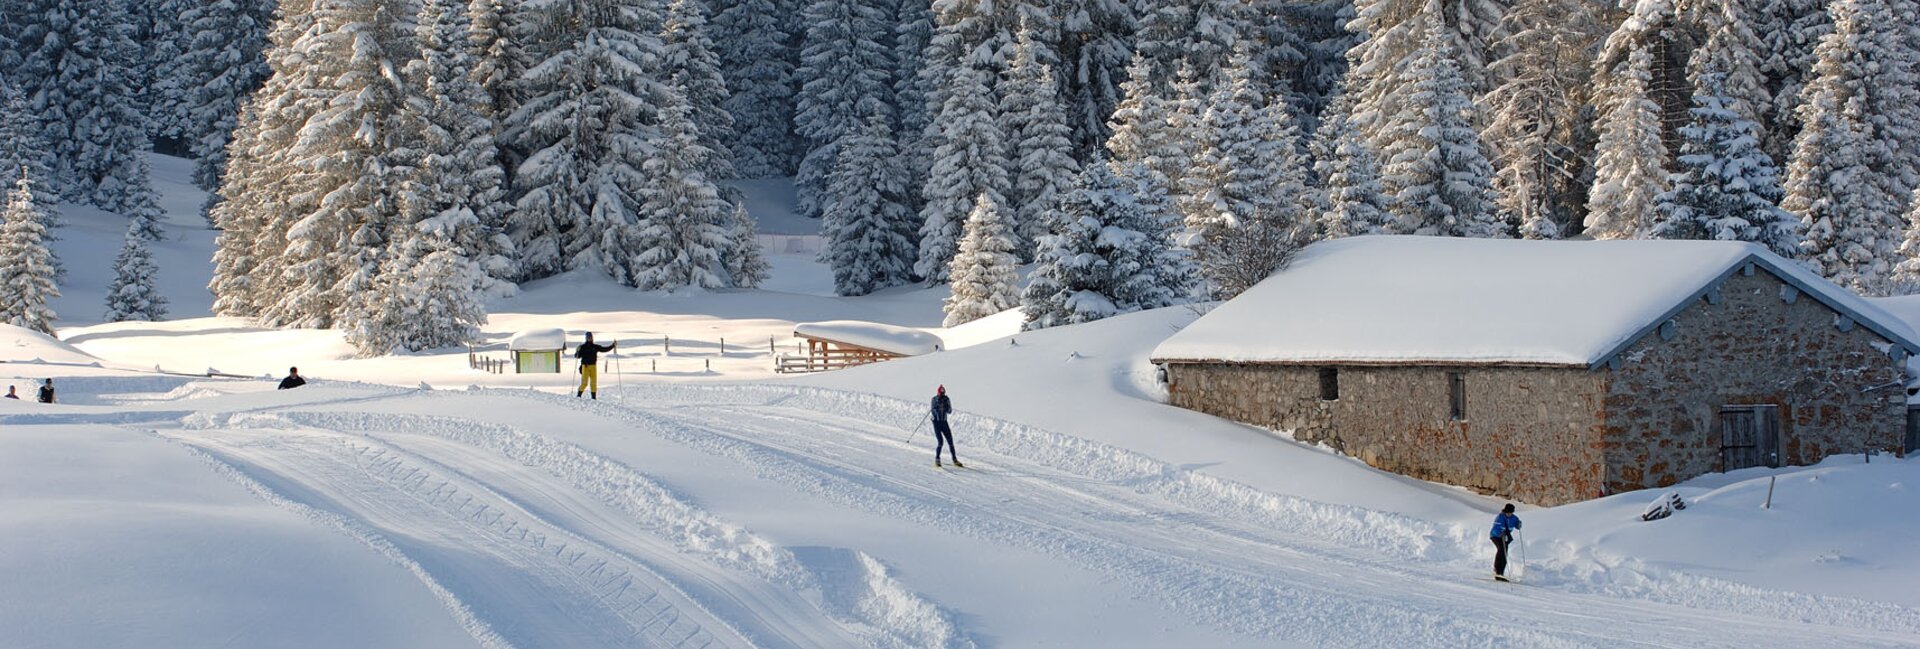 Alpe di Folgaria – Passo Coe Cross-Country Ski Centre